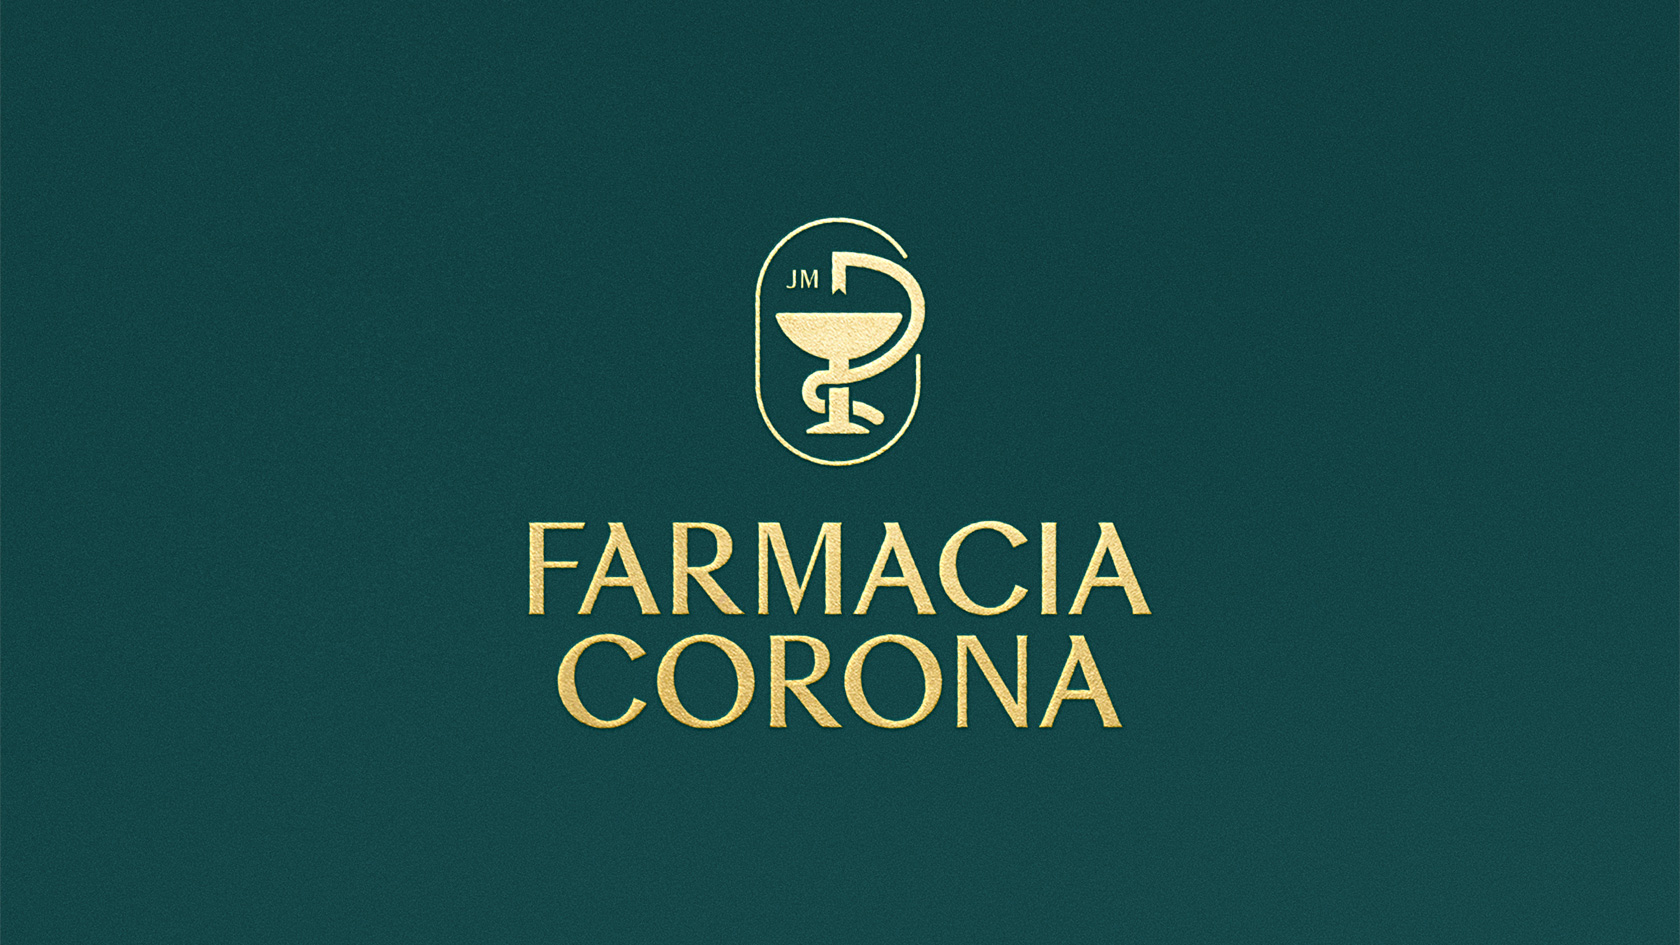 Diseño de identidad corporativa Farmacia Corona - Diseño de rotulación, diseño de interior, diseño de packaging - Pixelarte estudio de diseño Valencia